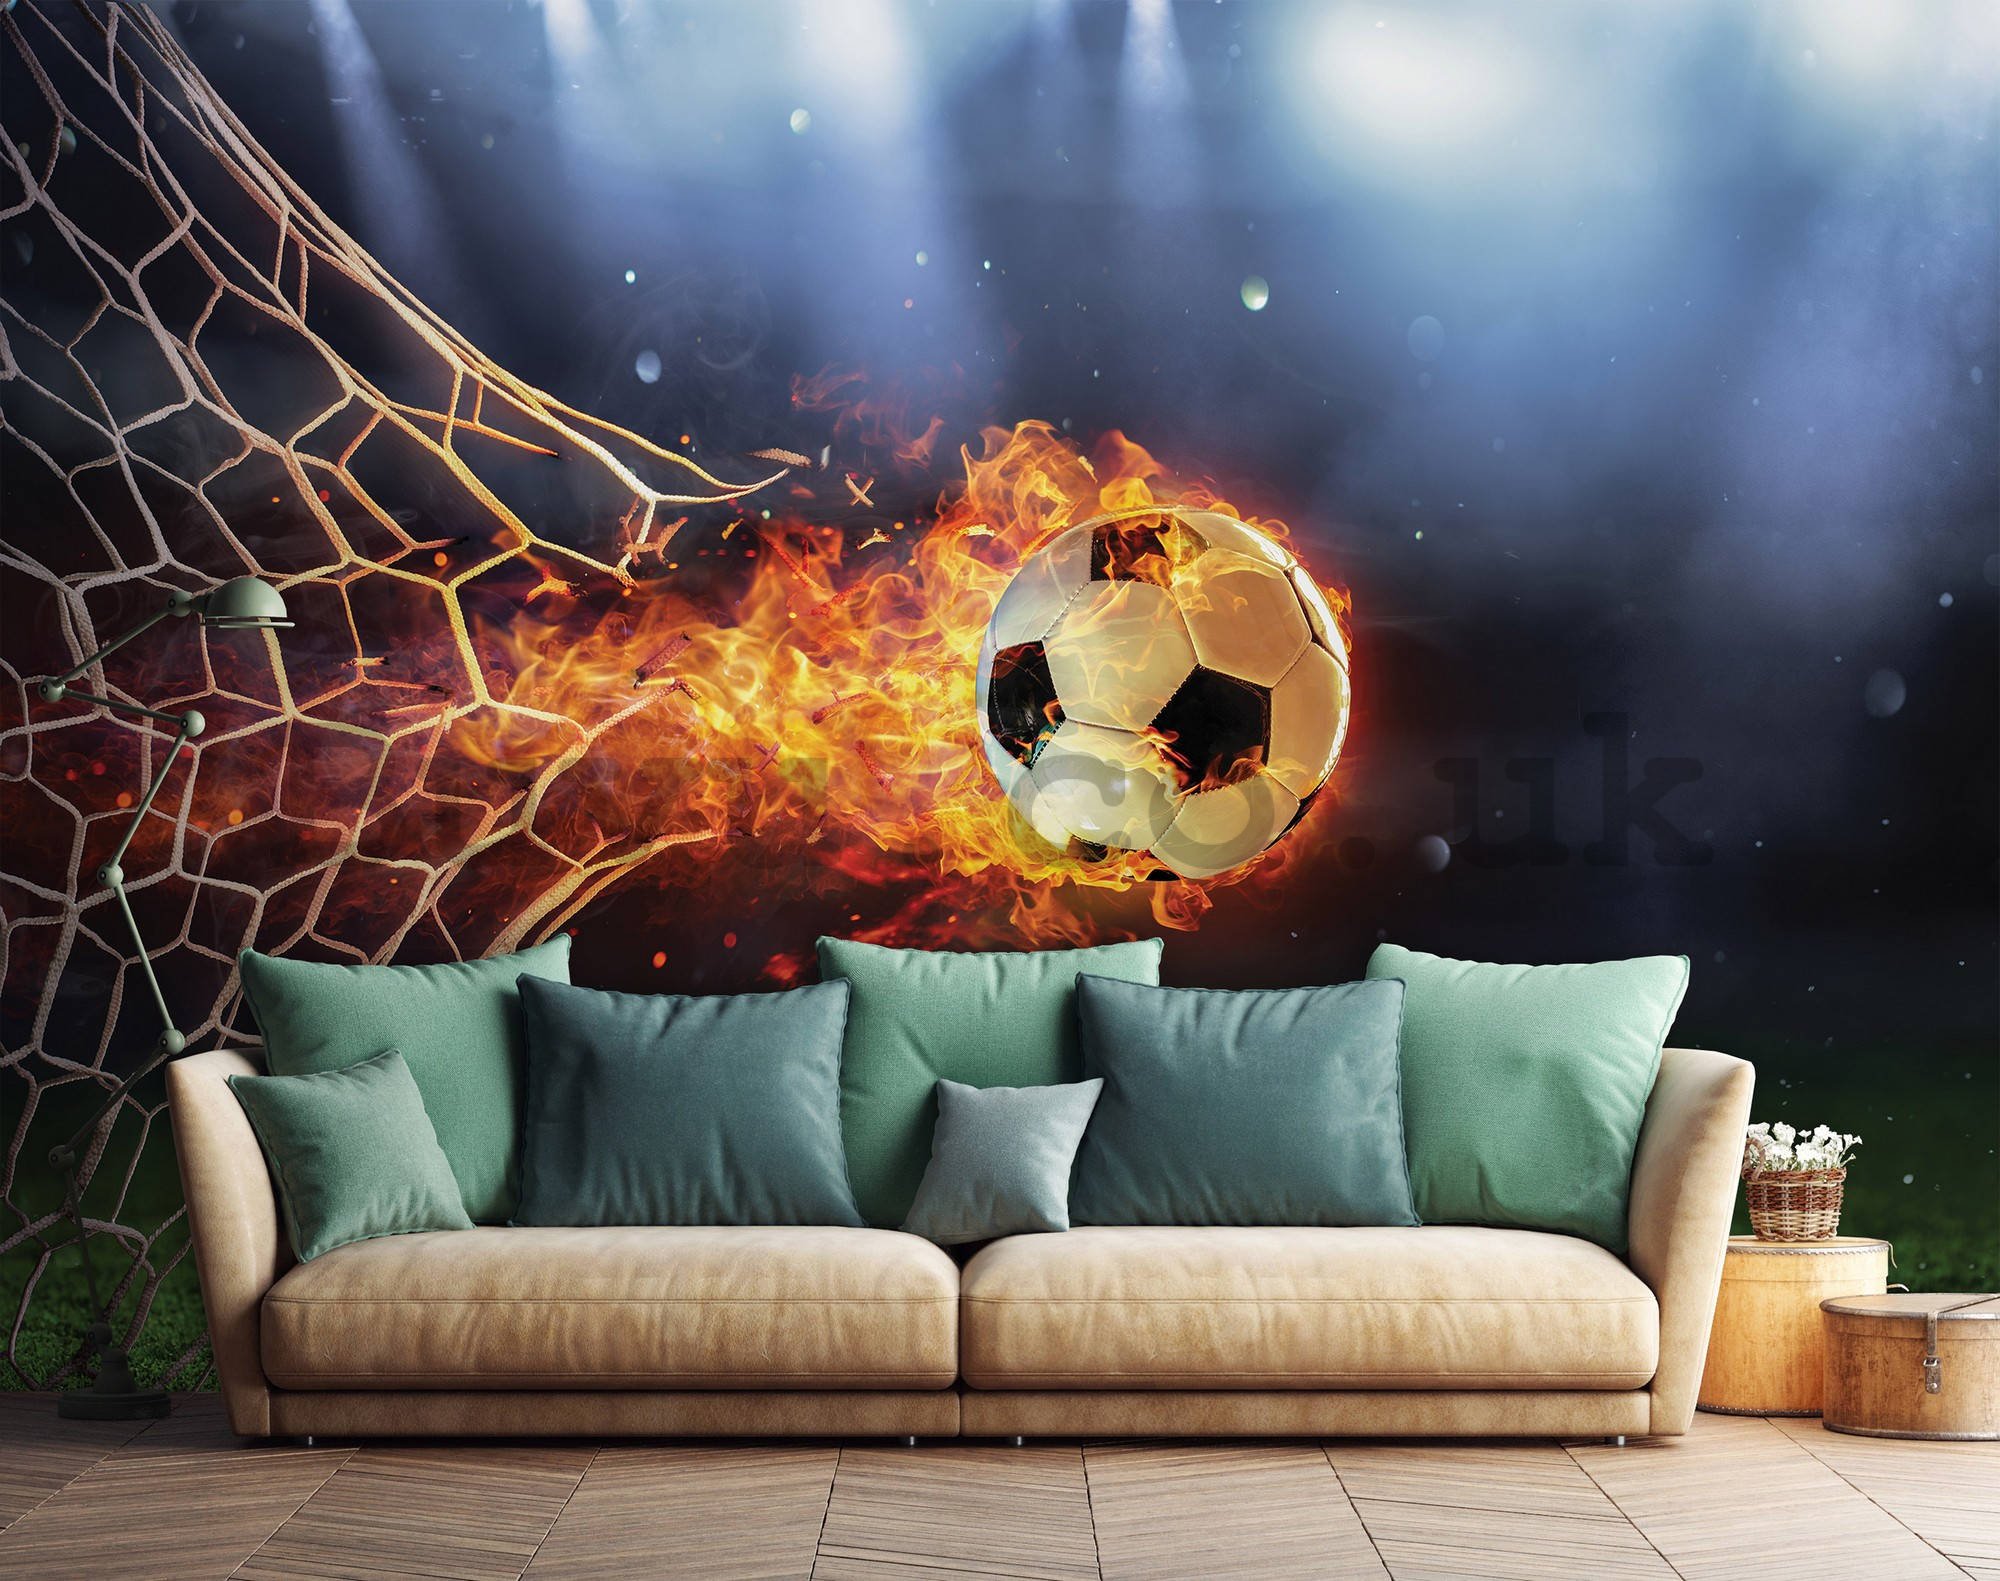 Wall mural vlies: Fiery football goal - 416x254 cm